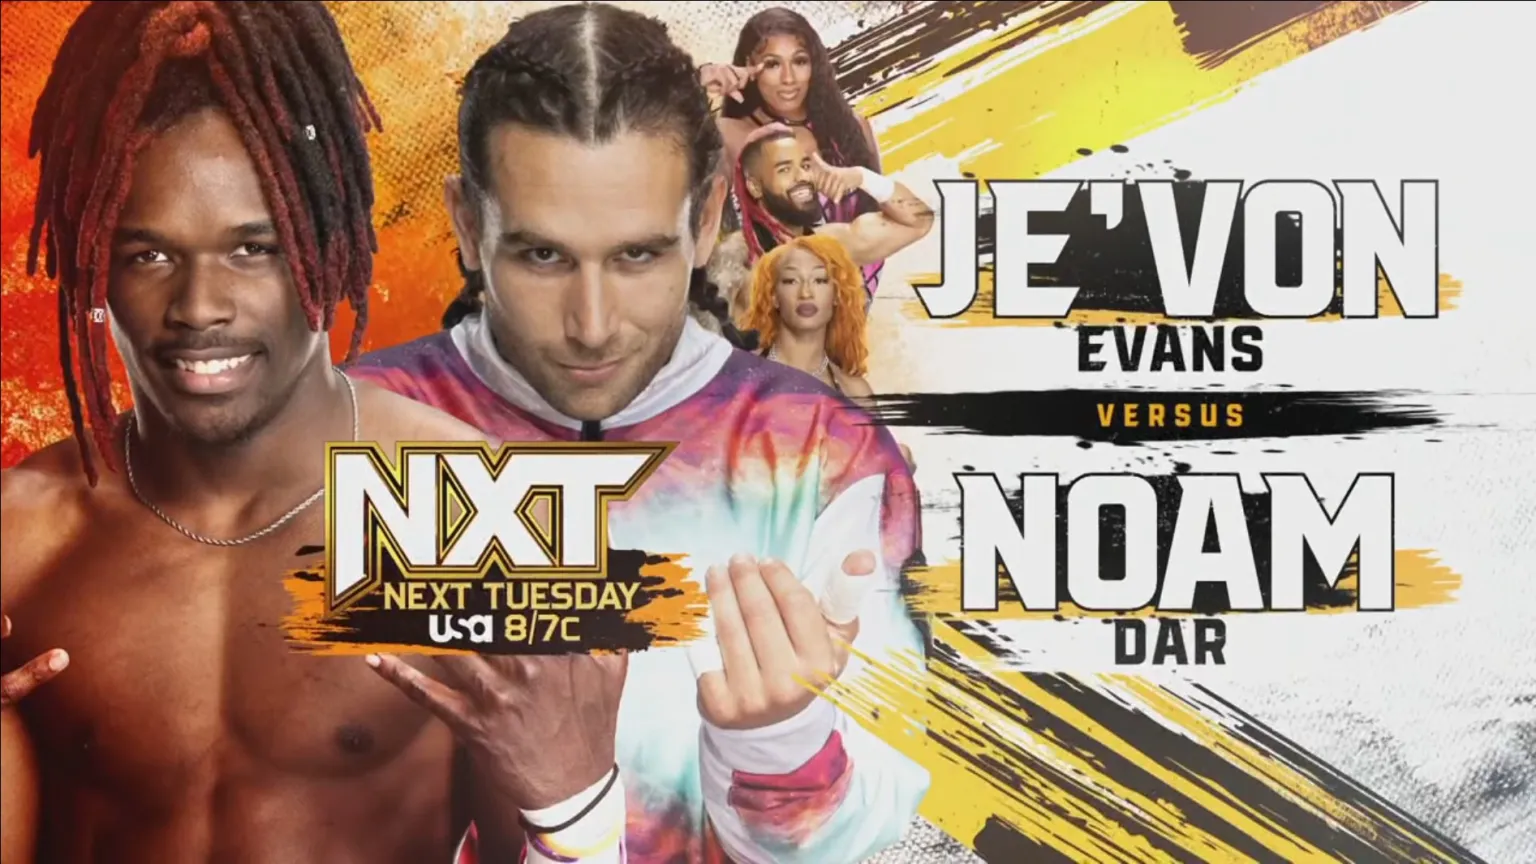 WWE: Je’Von Evans non ci sta e sfida Noam Dar. Ecco la card aggiornata del prossimo NXT